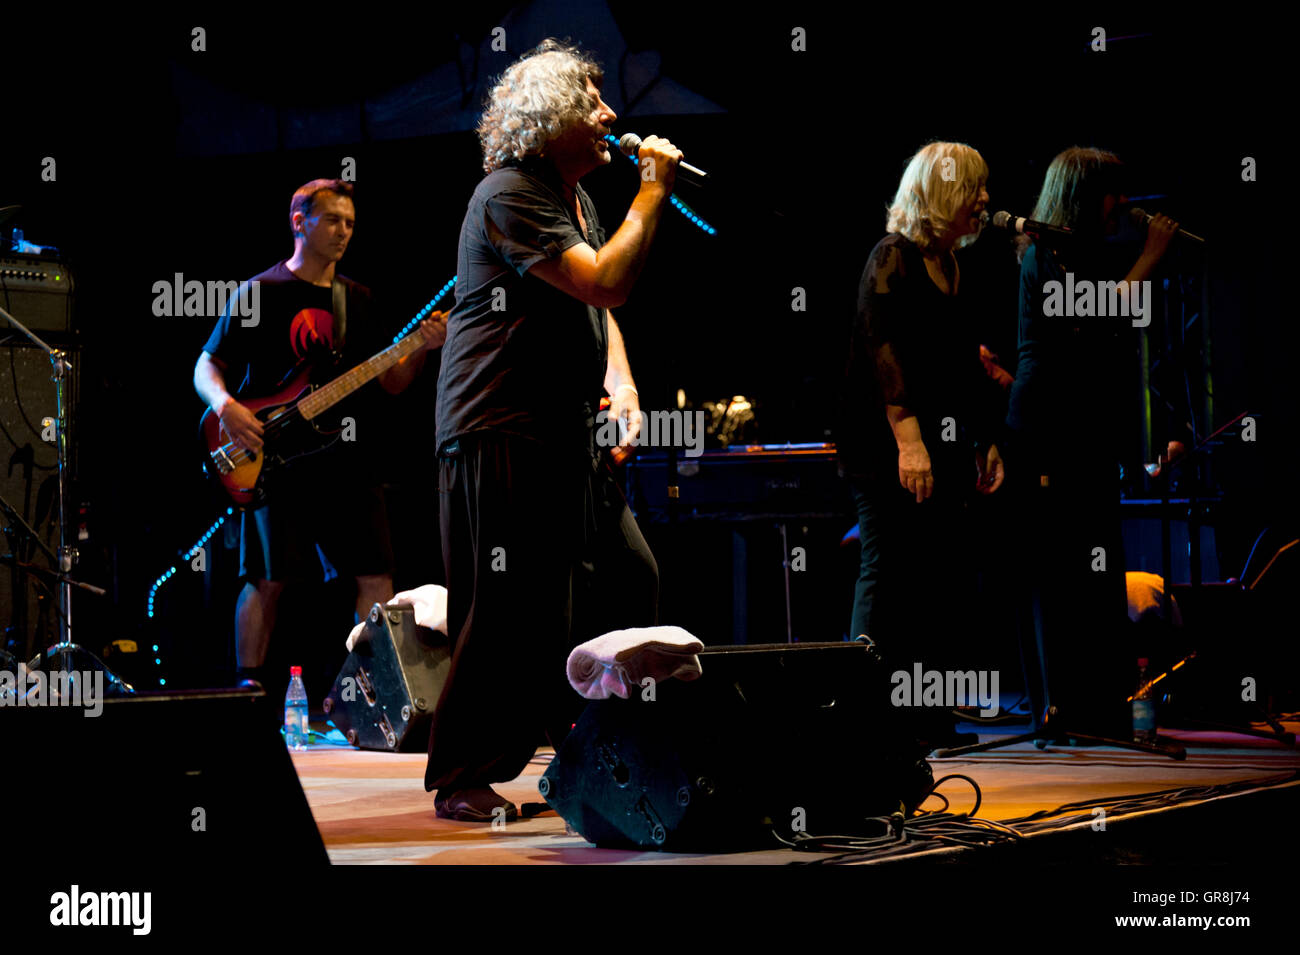 Banda de Rock progresivo francés Magma en vivo en el 26. Zappanale en Bad Doberan, Alemania, 17 de julio de 2015. Foto de stock